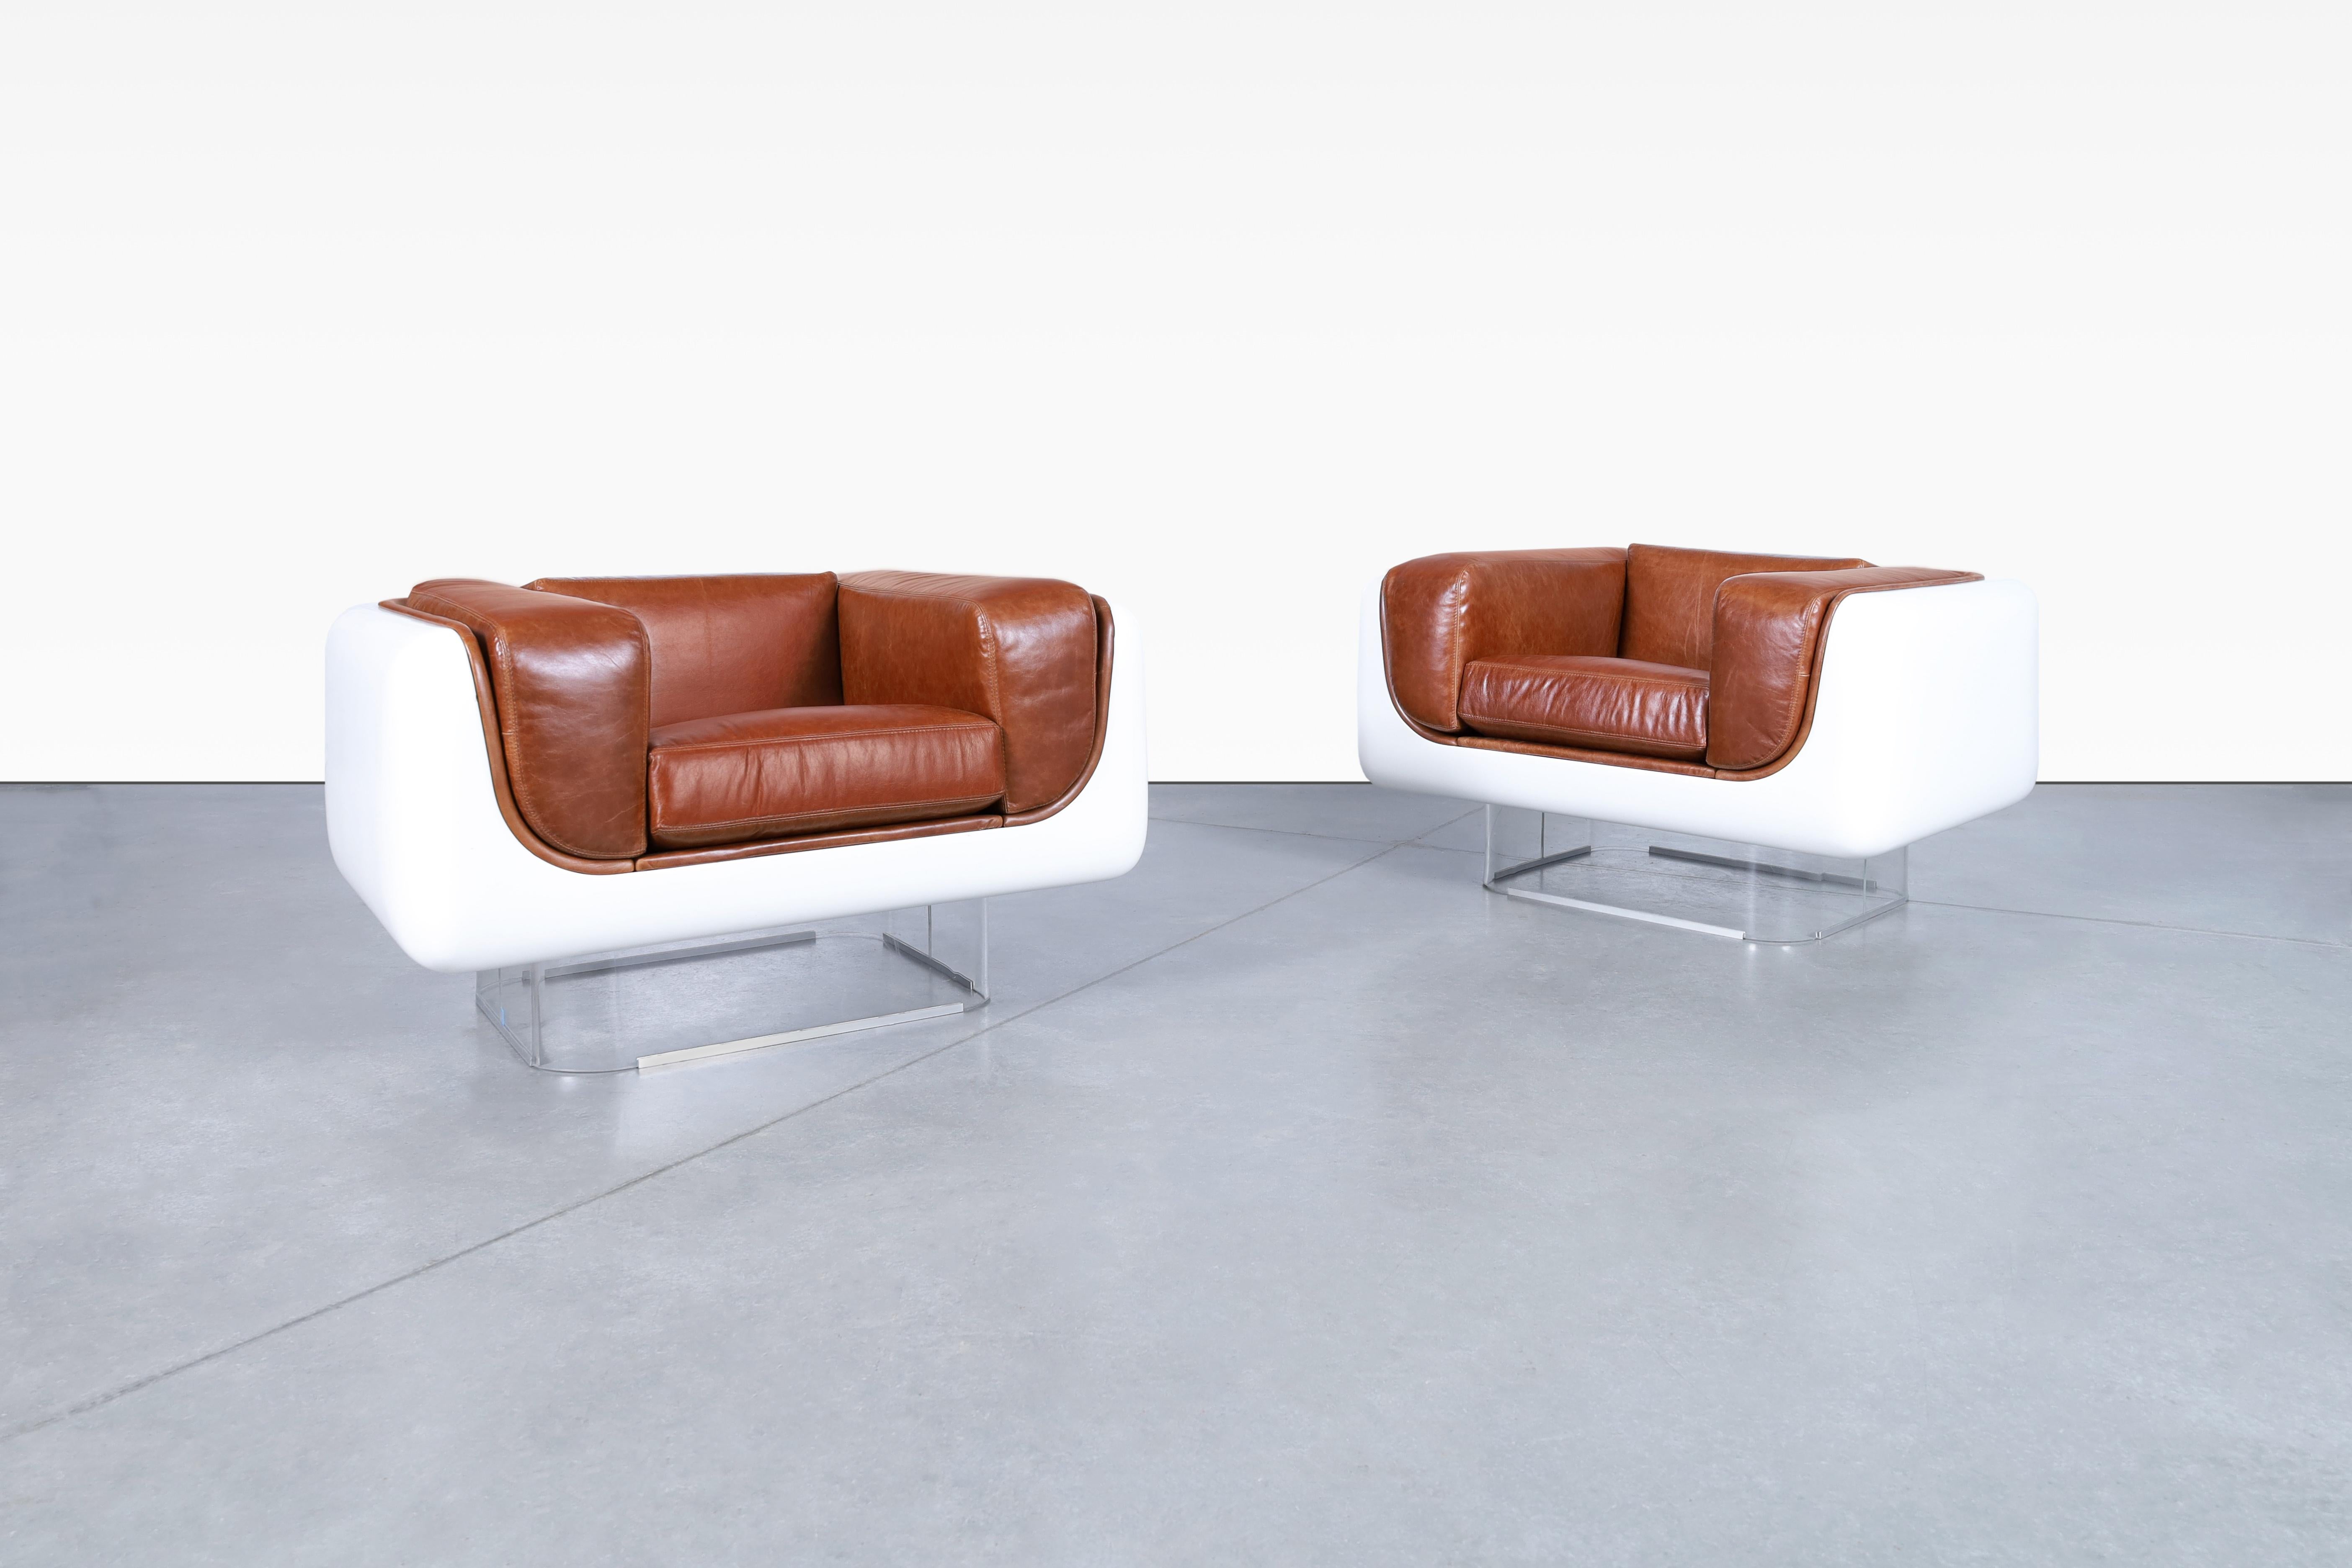 Magnifiques chaises longues vintage en cuir et en lucite conçues par William C. Andrus pour Steelcase aux États-Unis, vers les années 1970. Les chaises nouvellement retapissées font vraiment plaisir à voir. Ce ne sont pas seulement des meubles